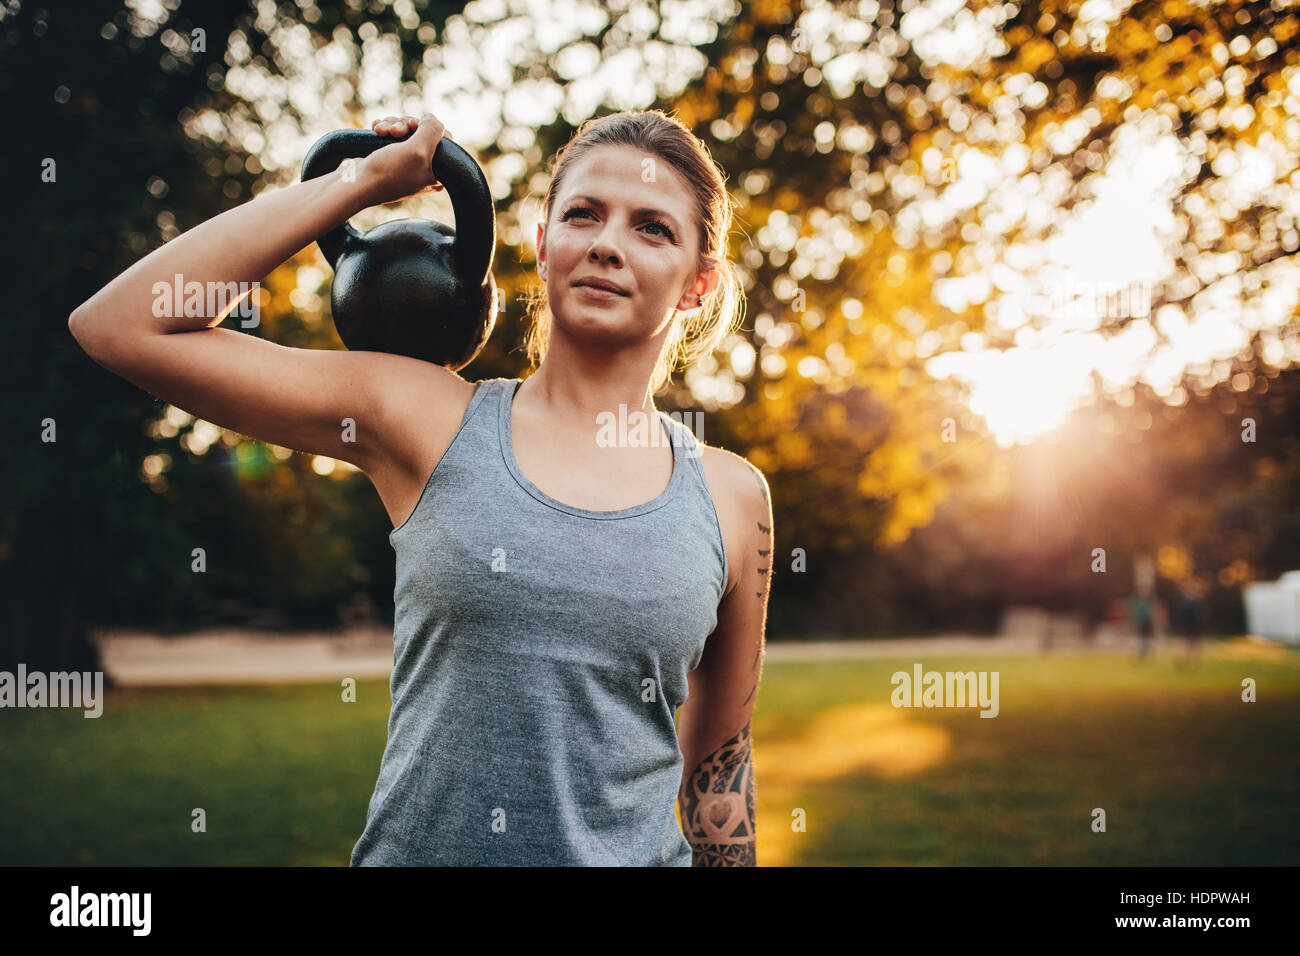 Porträt von Fit junge Frau mit Kettlebell Gewichte im Park. Fitness-Frau training mit Gewichten im Park. Stockfoto